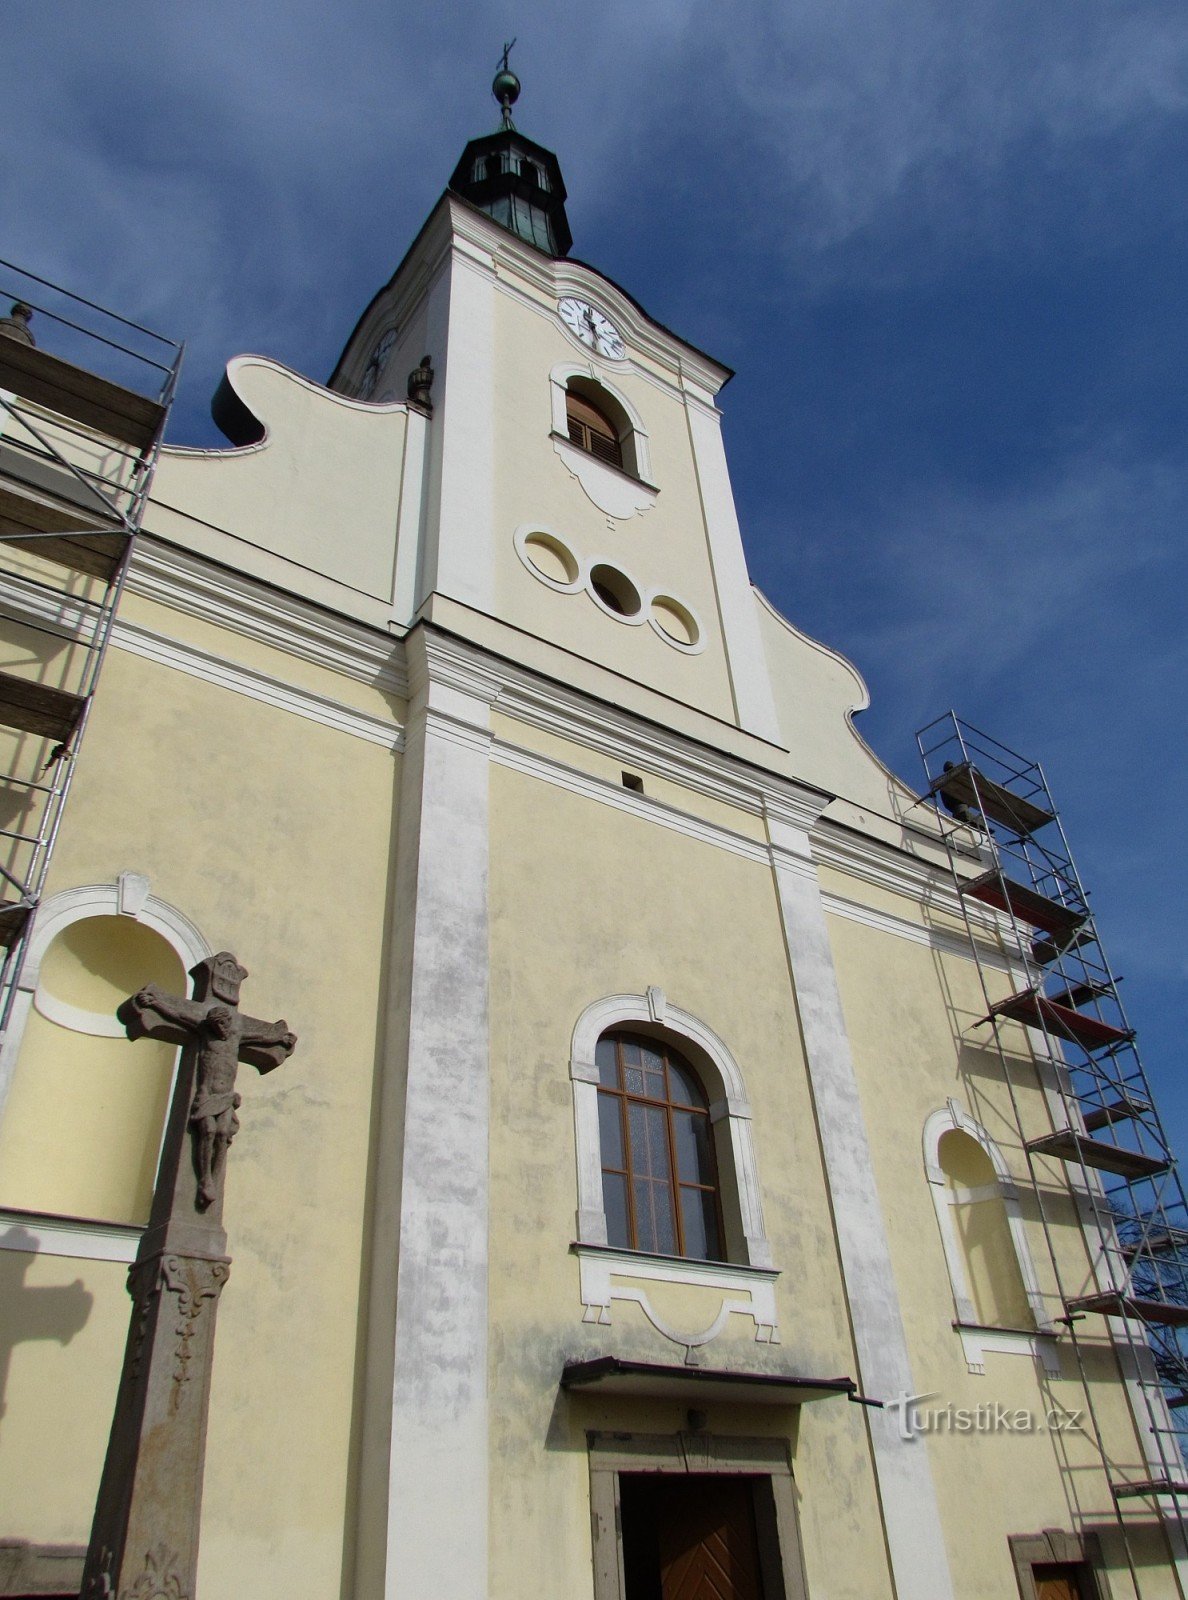 Фриштак - церковь Святого Николая